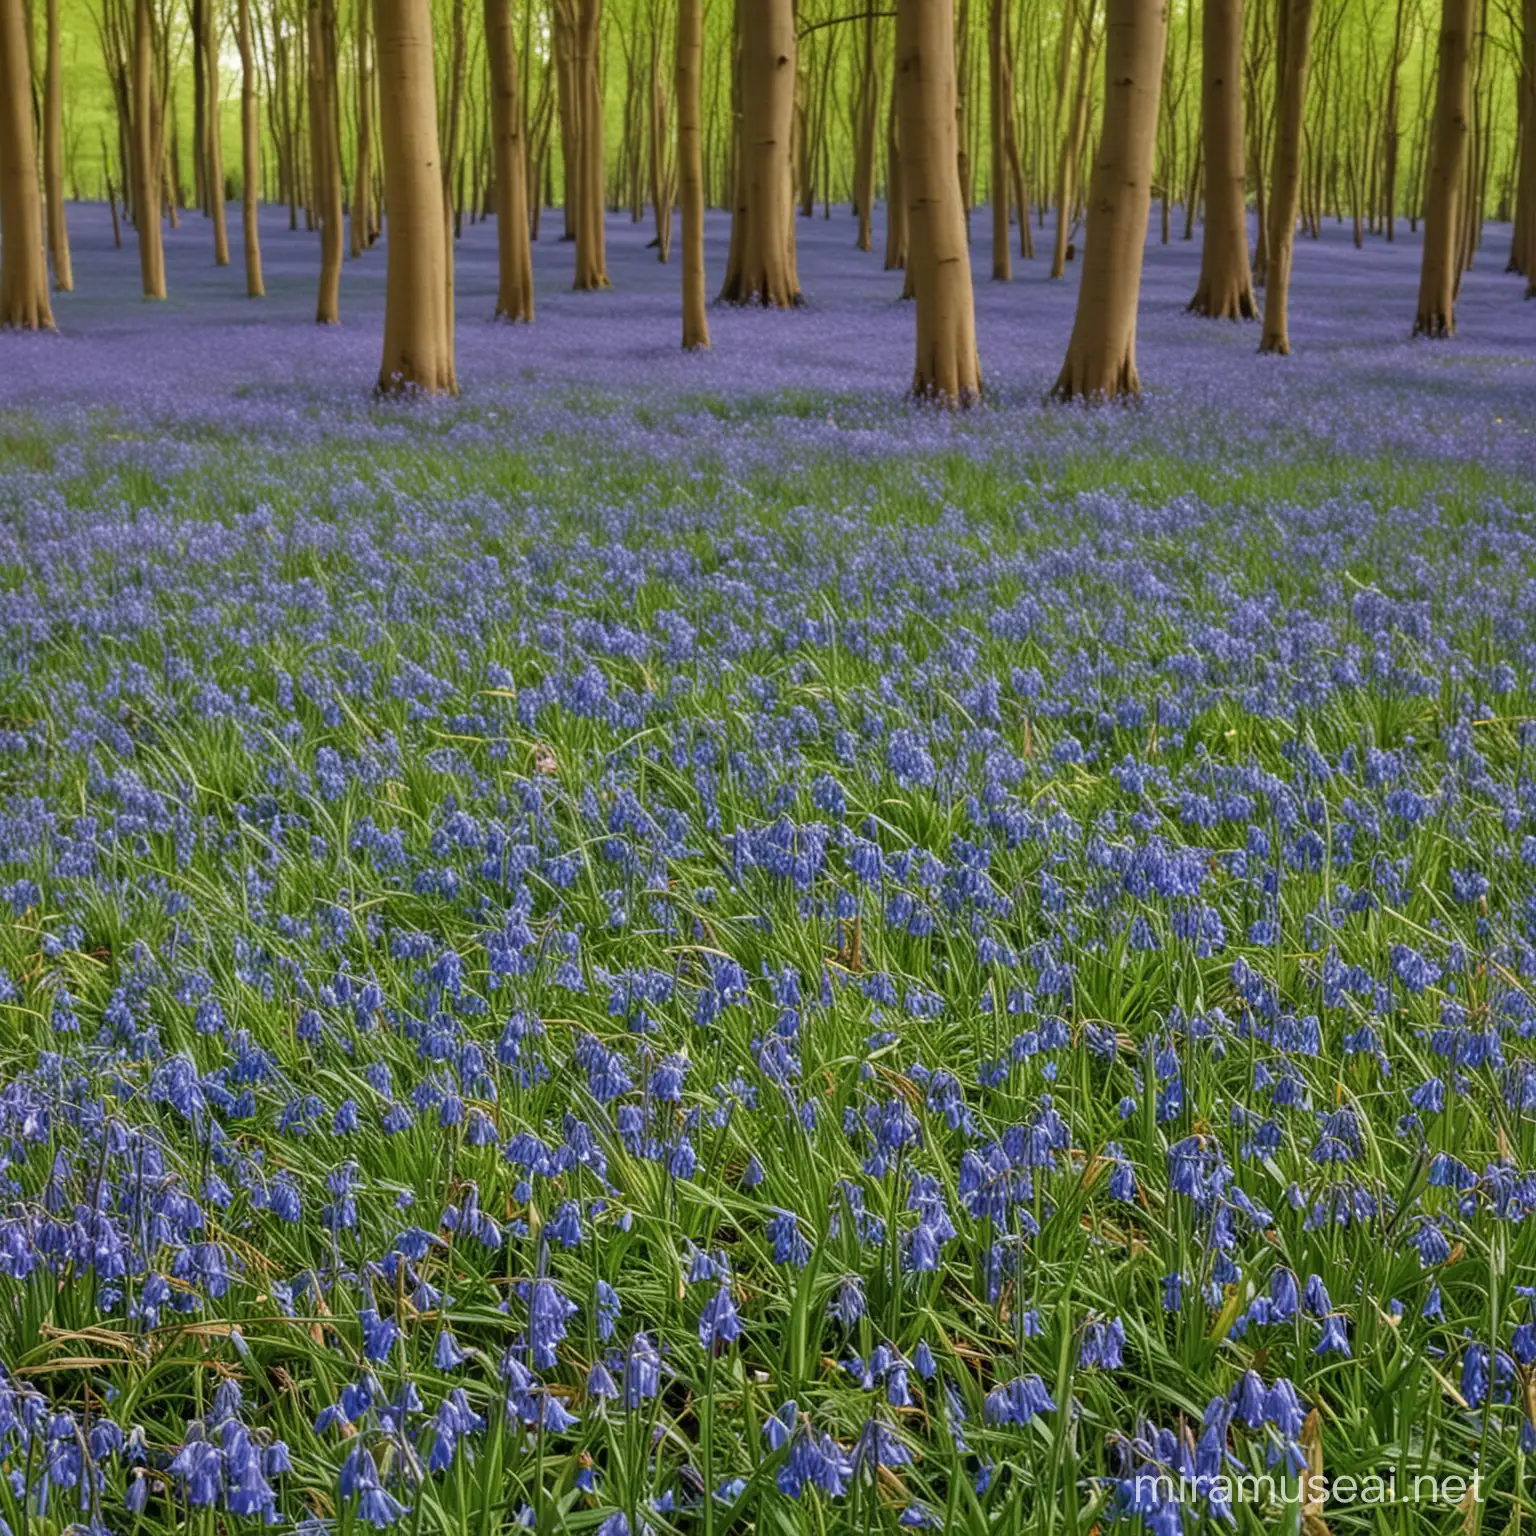 Enchanting Bluebells Blooming in Sunlit Meadow